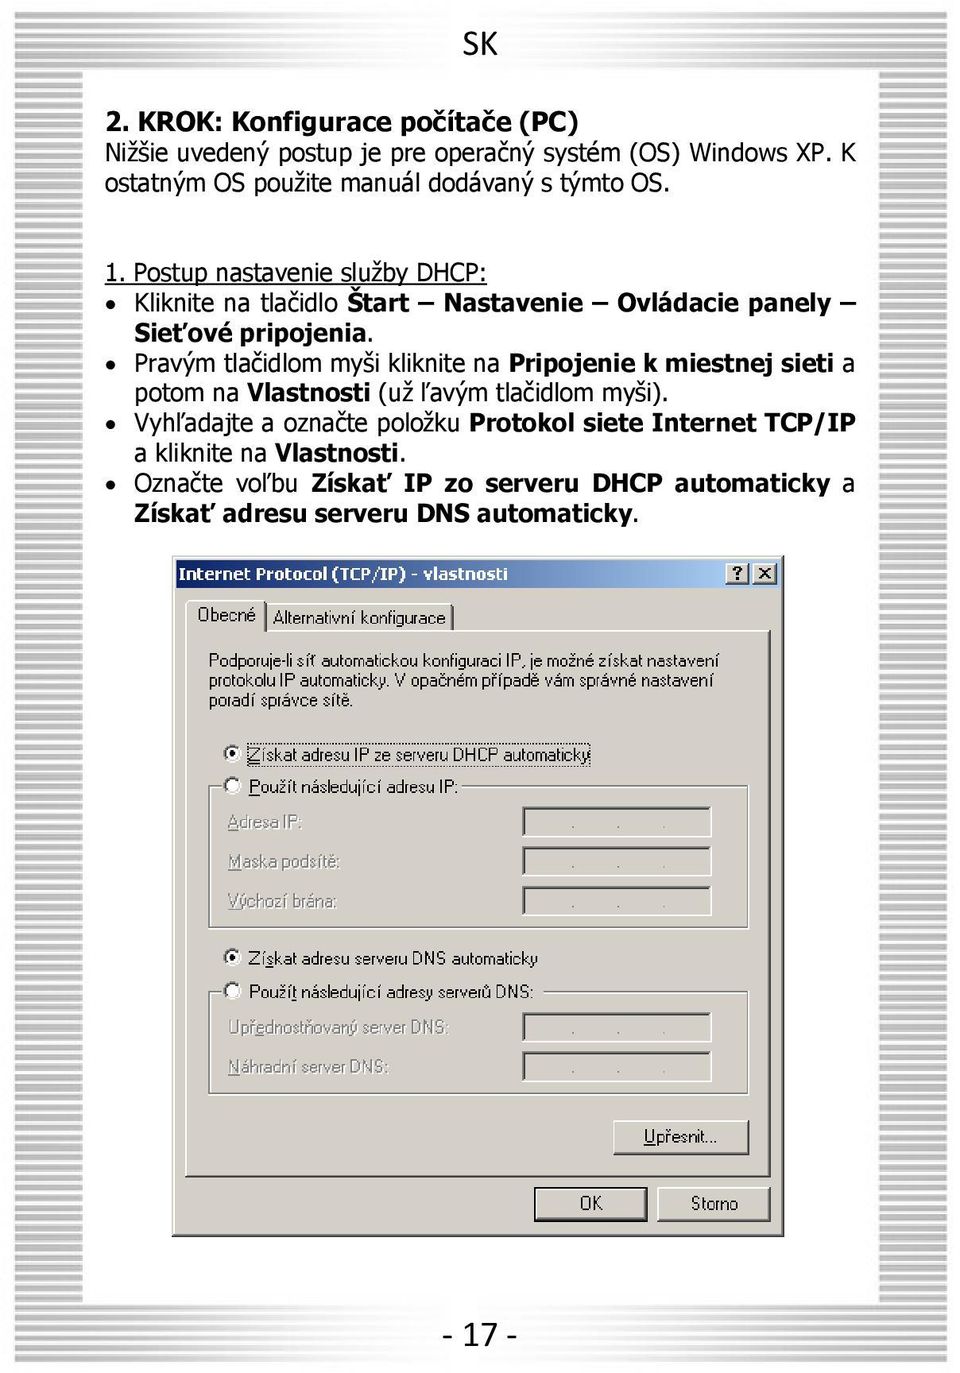 Postup nastavenie služby DHCP: Kliknite na tlačidlo Štart Nastavenie Ovládacie panely Sieťové pripojenia.